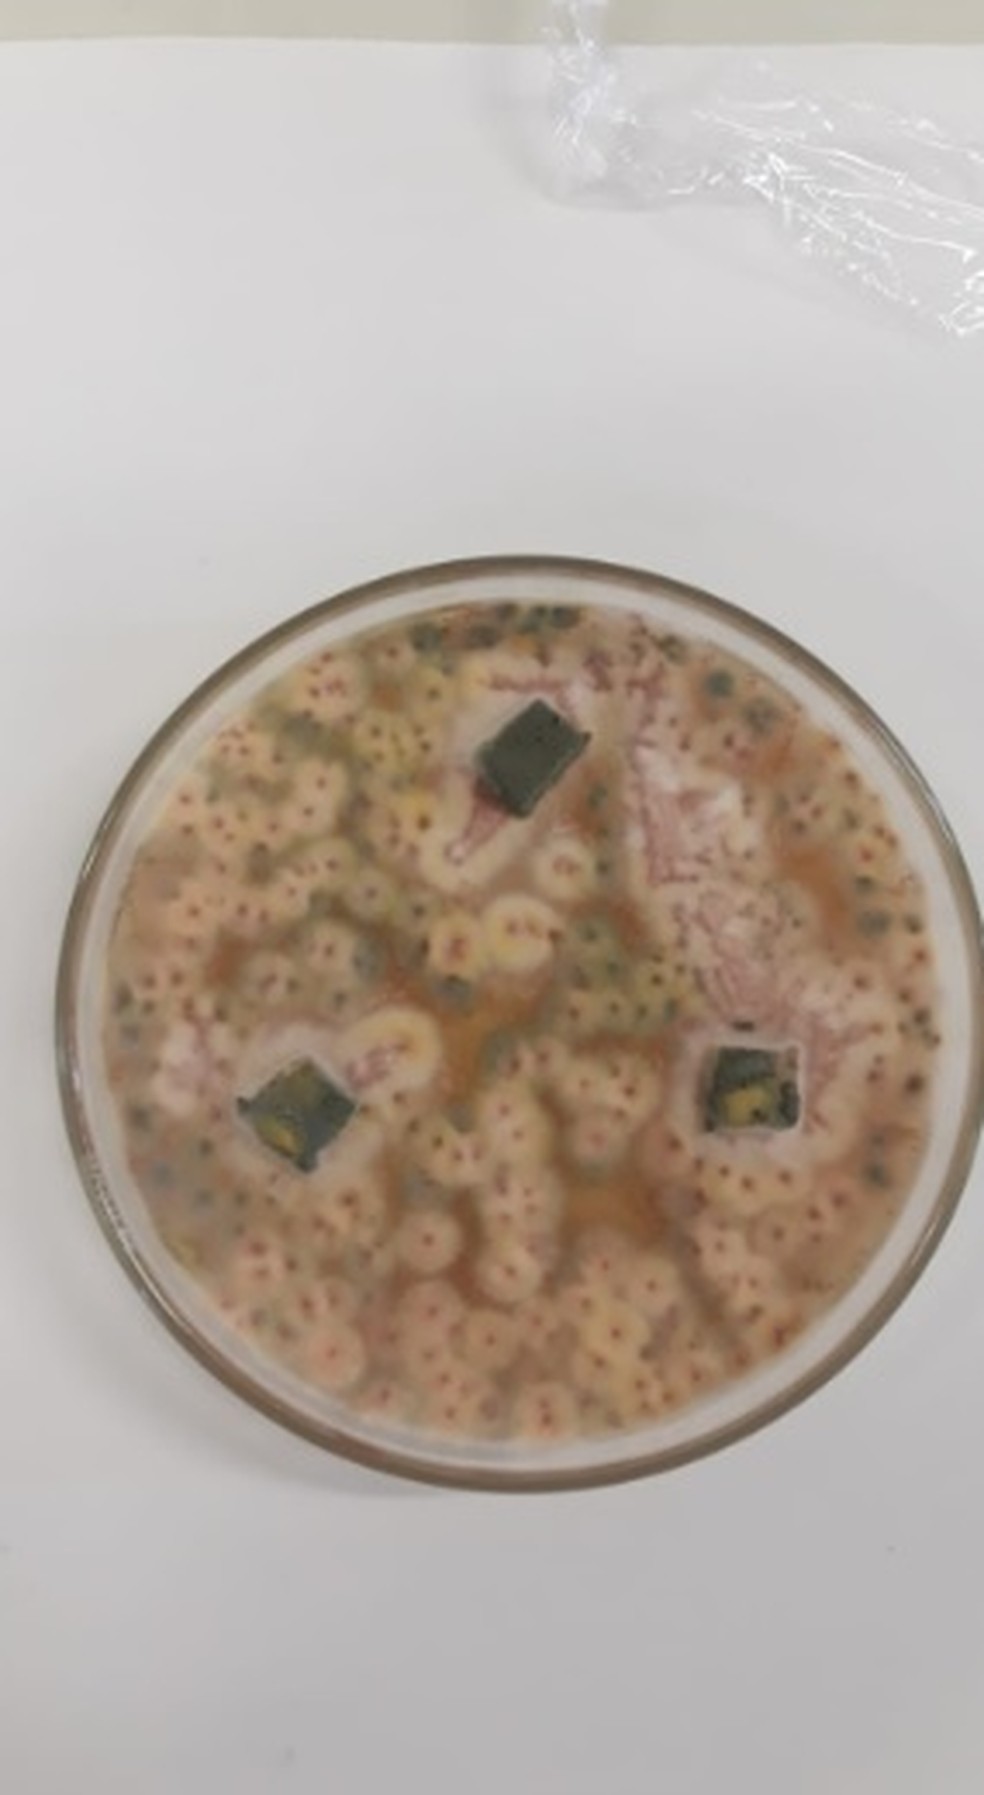 Isolado de fungo endofítico em placa de Petri — Foto: UFPE